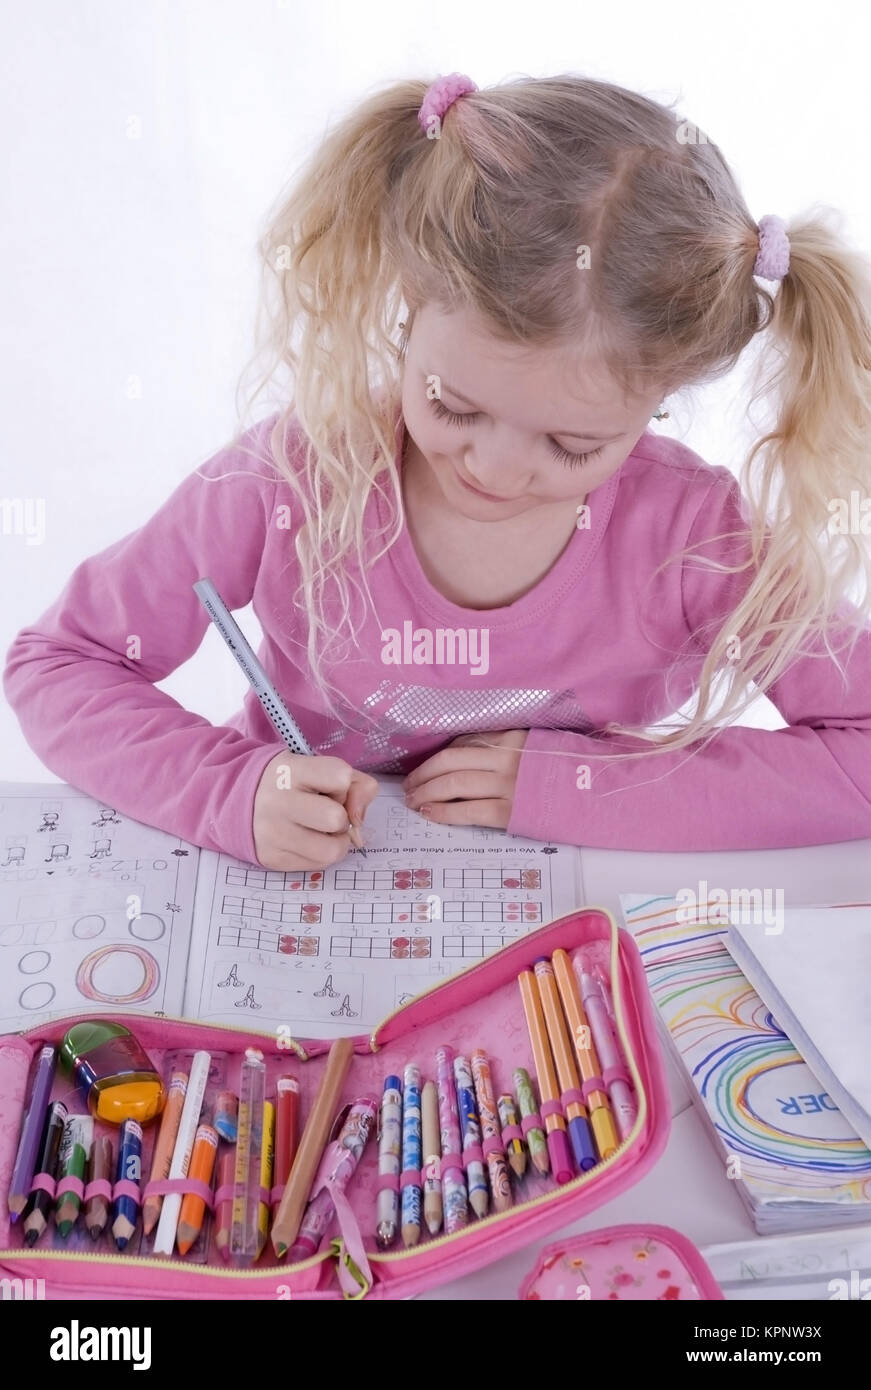 Model release , Schulmaedchen, 7 Jahre, macht Hausaufgabe - school girl does homework Stock Photo